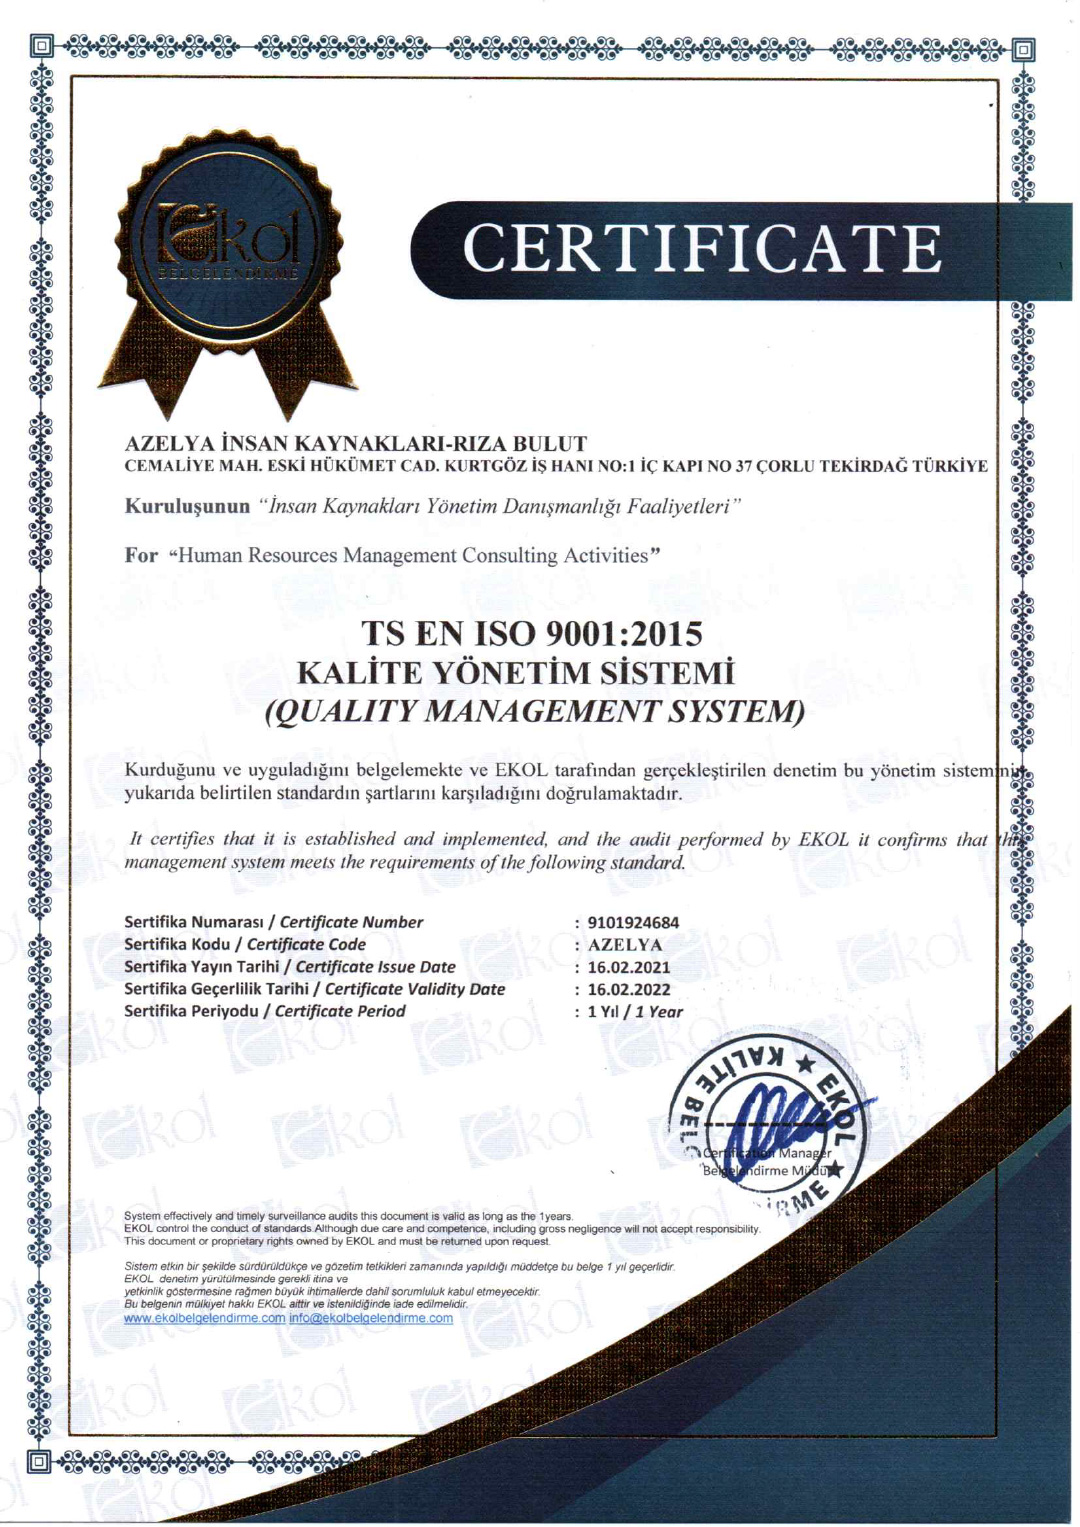 AZELYA-TS-ISO-9001